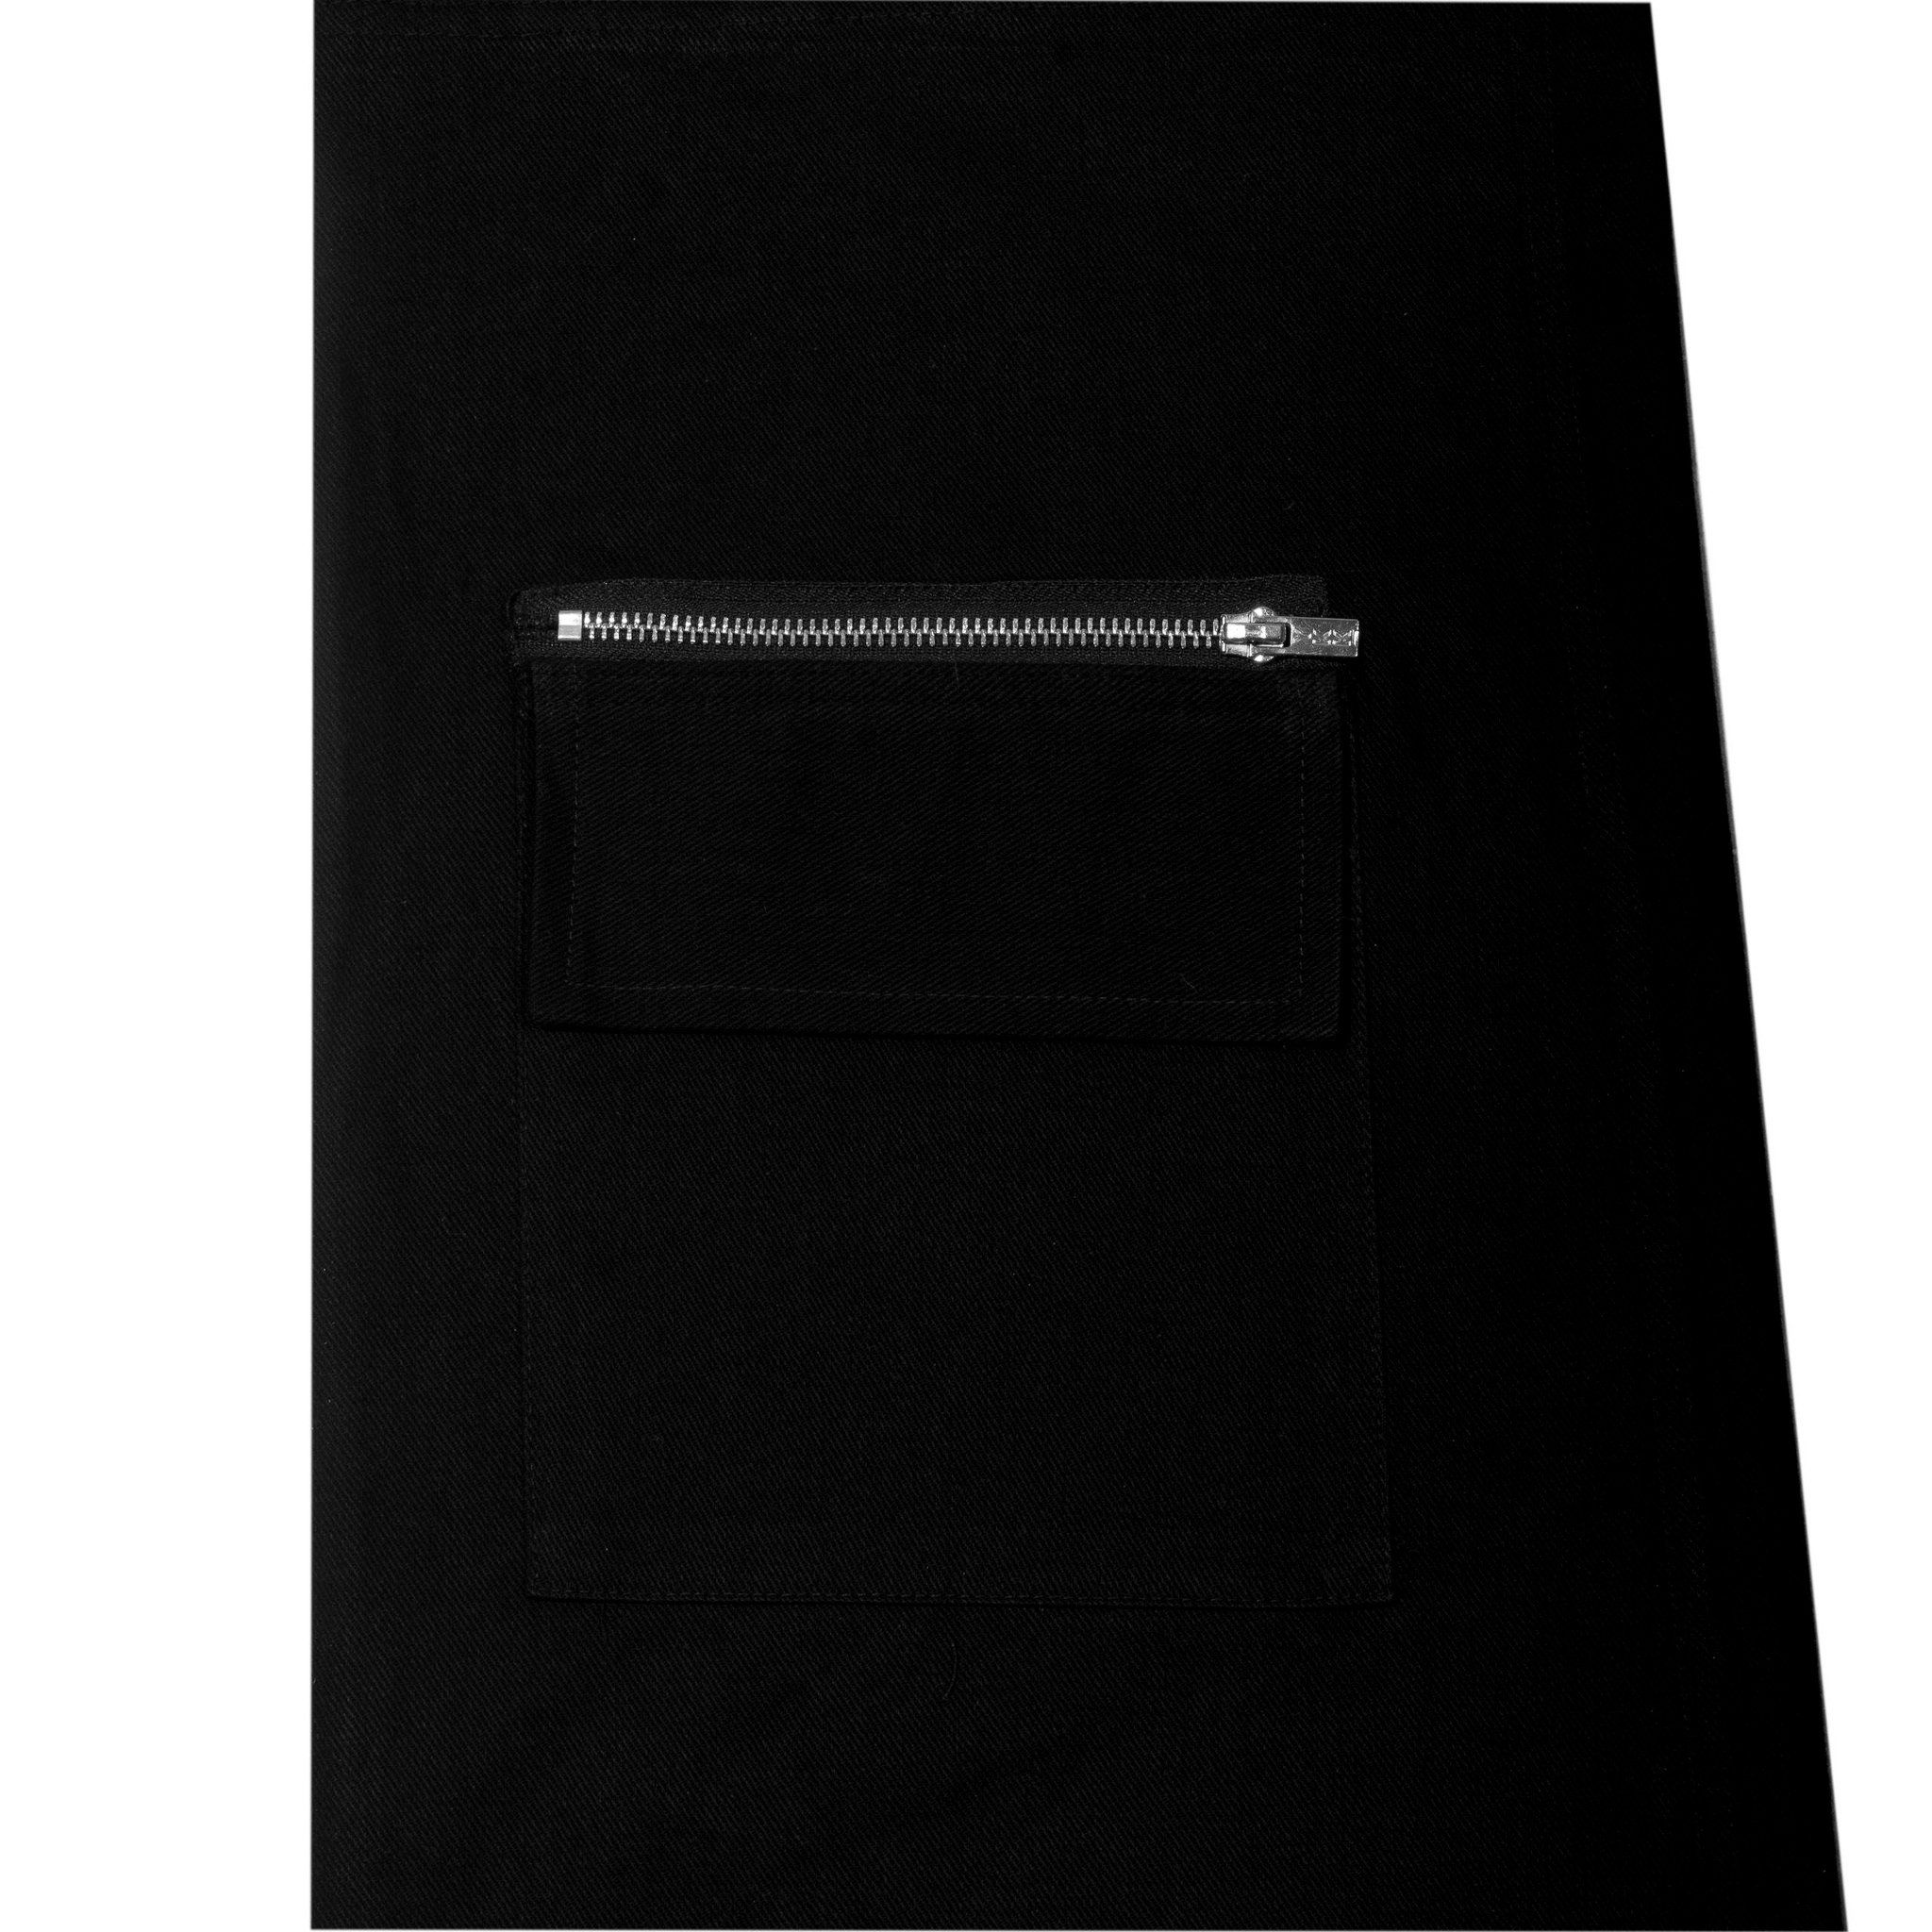  Quần dài kaki túi hộp màu đen  | KAC Cargo Pants 